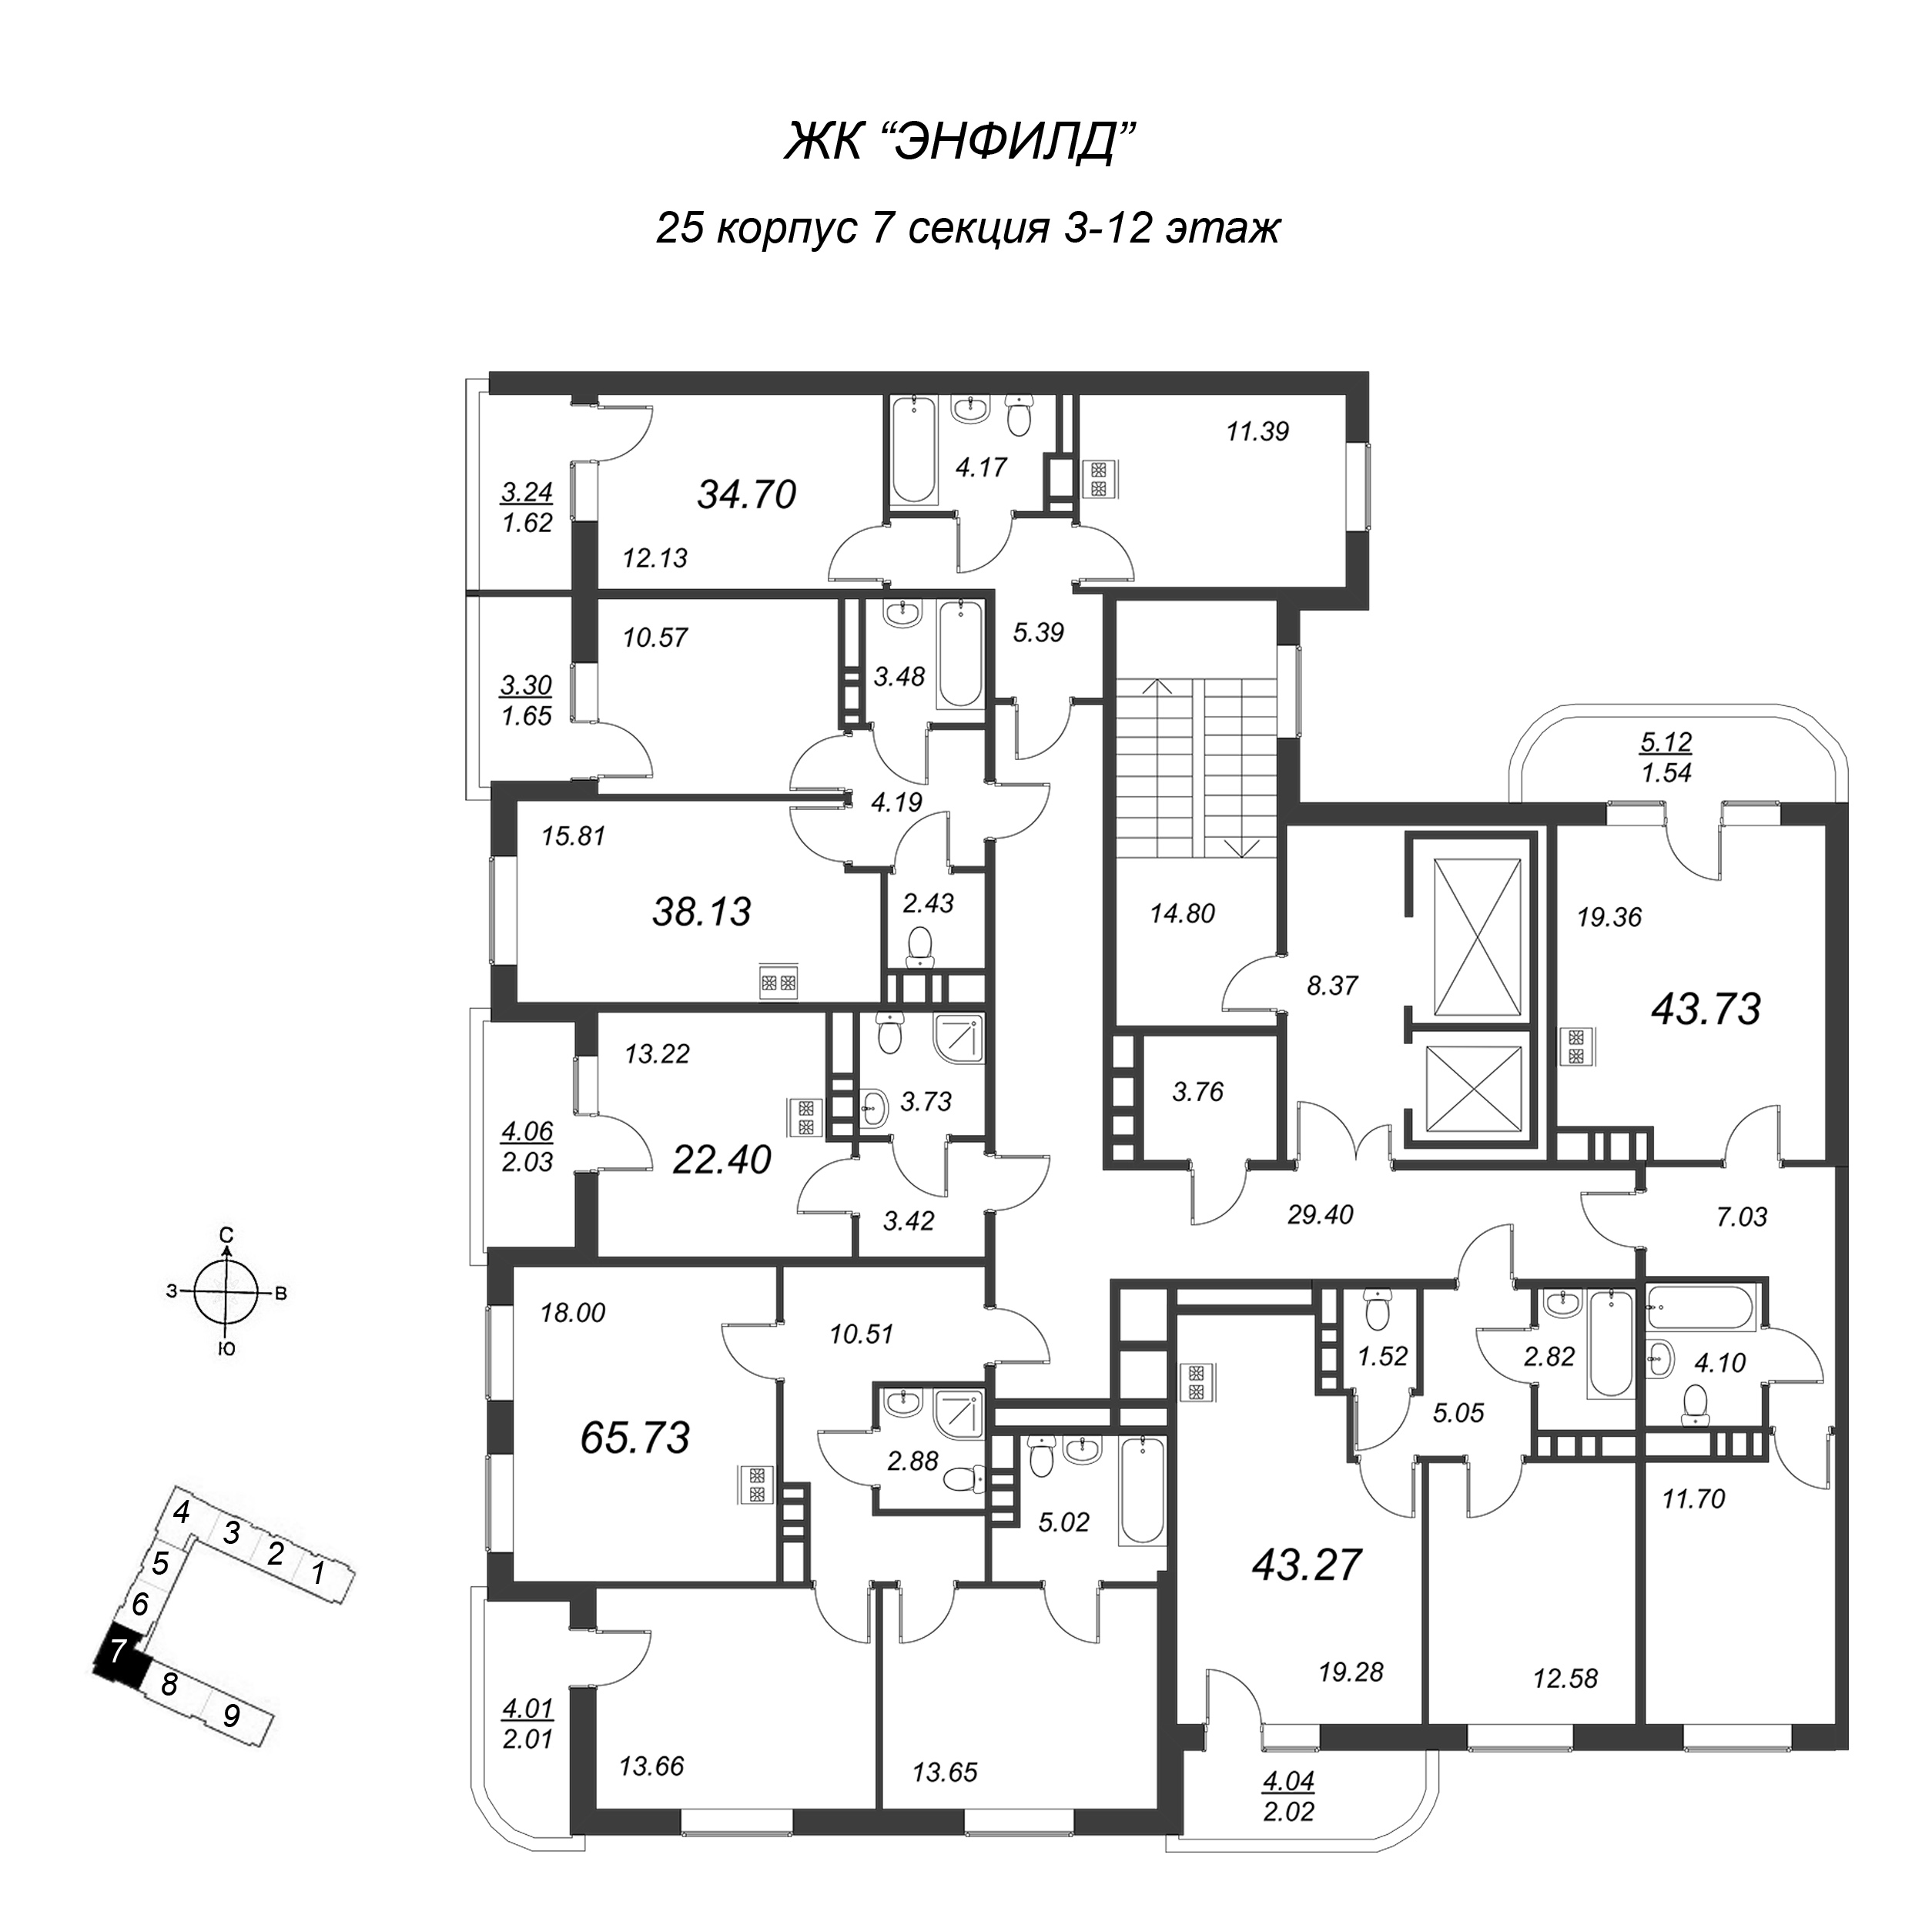 2-комнатная (Евро) квартира, 38.13 м² в ЖК "Энфилд" - планировка этажа